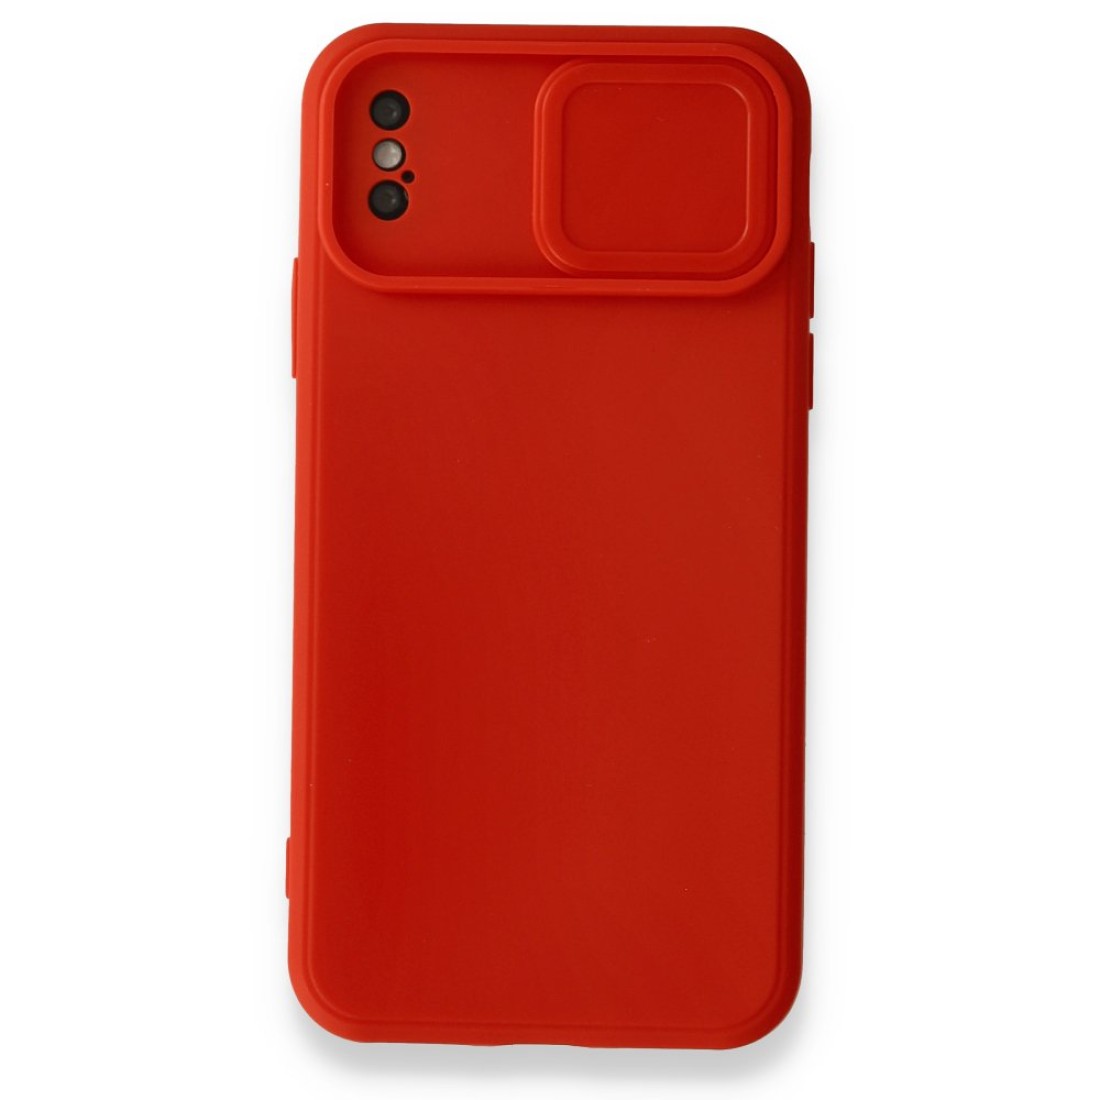 Apple iPhone X Kılıf Color Lens Silikon - Kırmızı